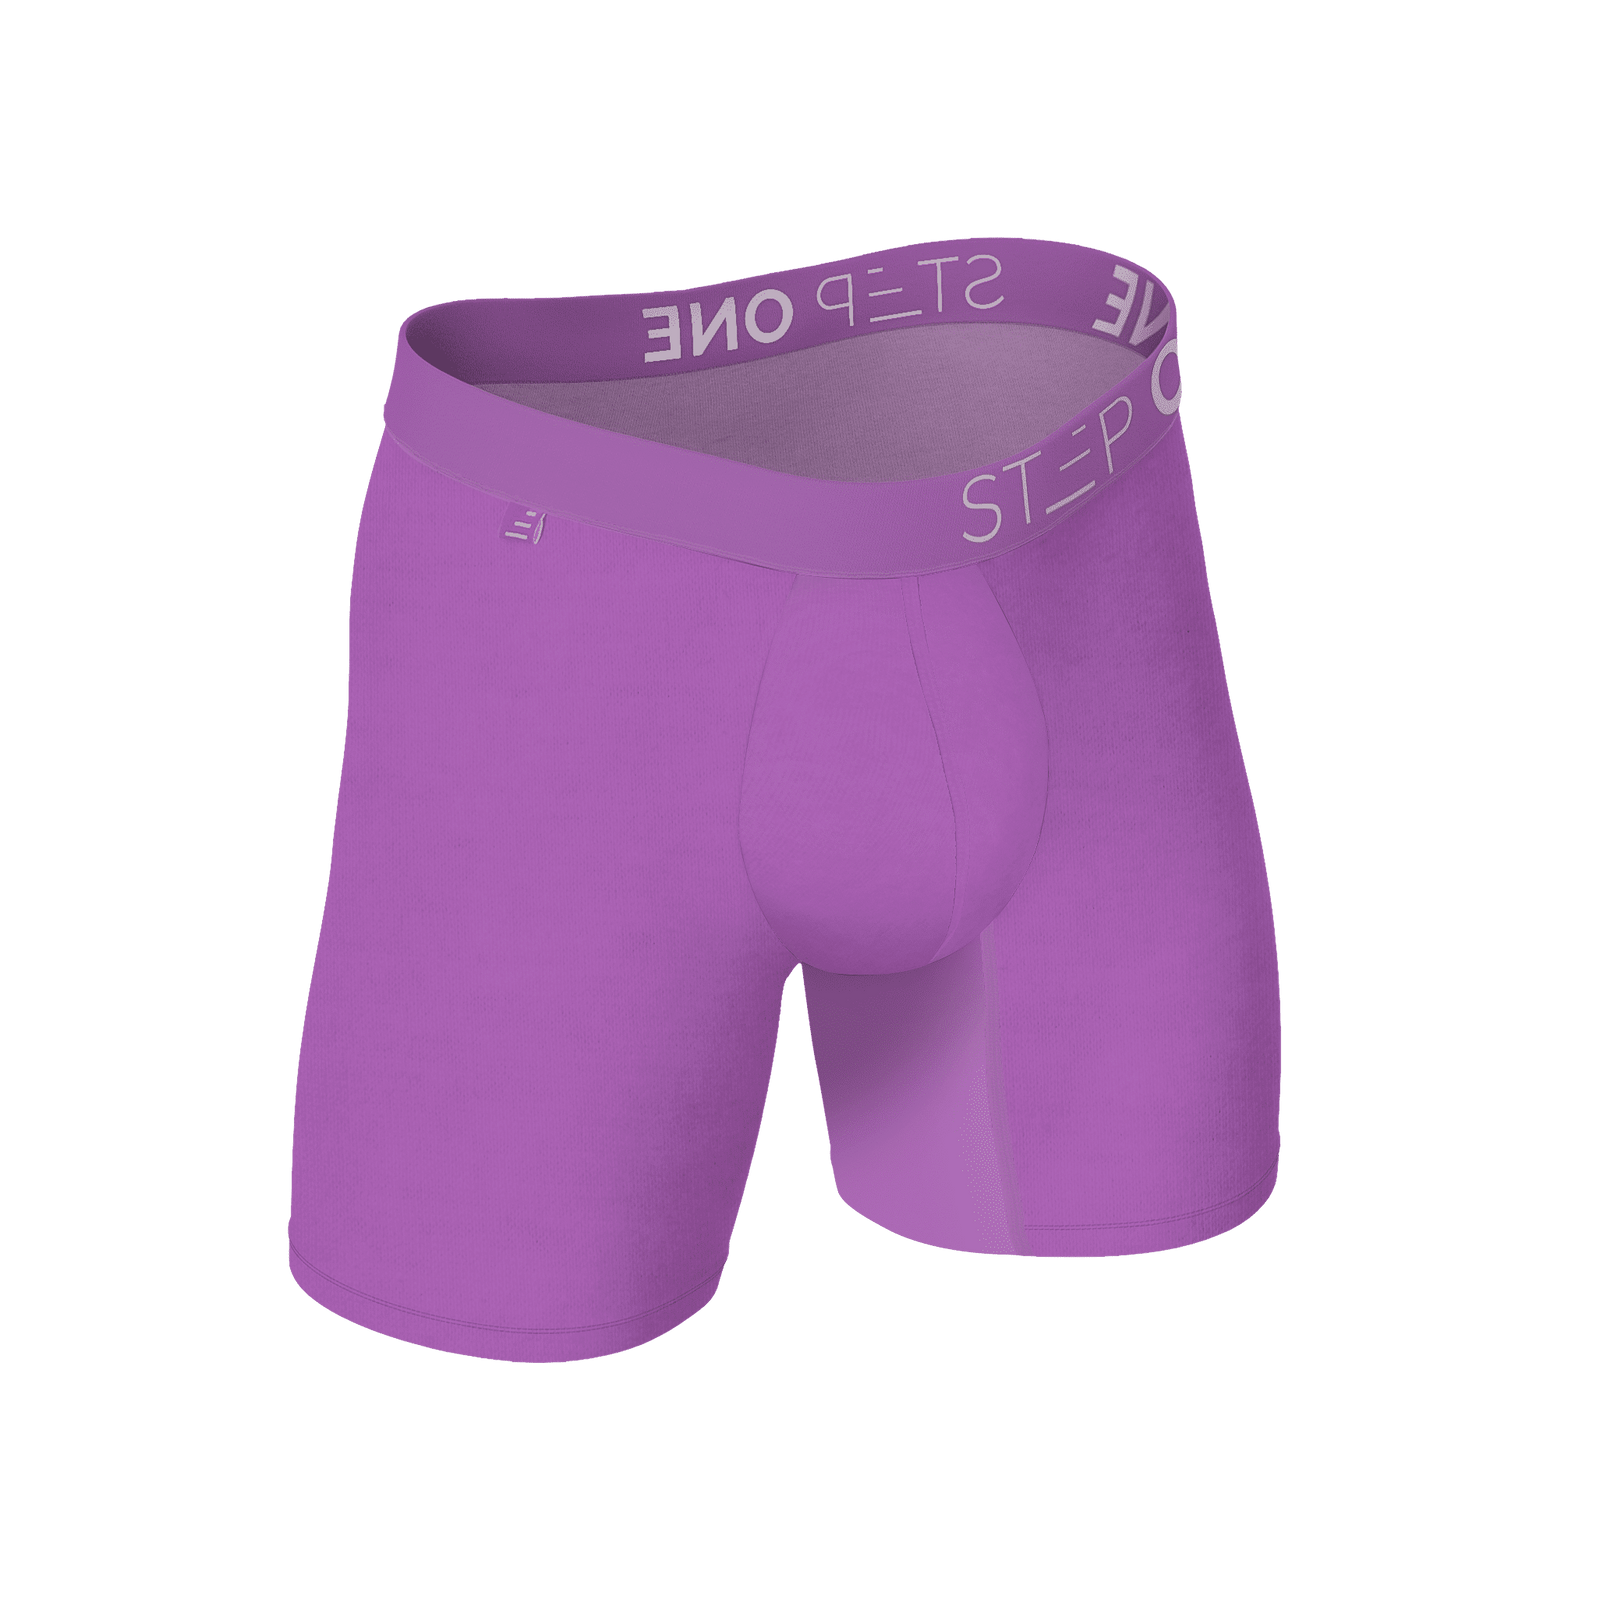 Boxer Brief - Willy Bonkas | Step One Men's Underwear UK